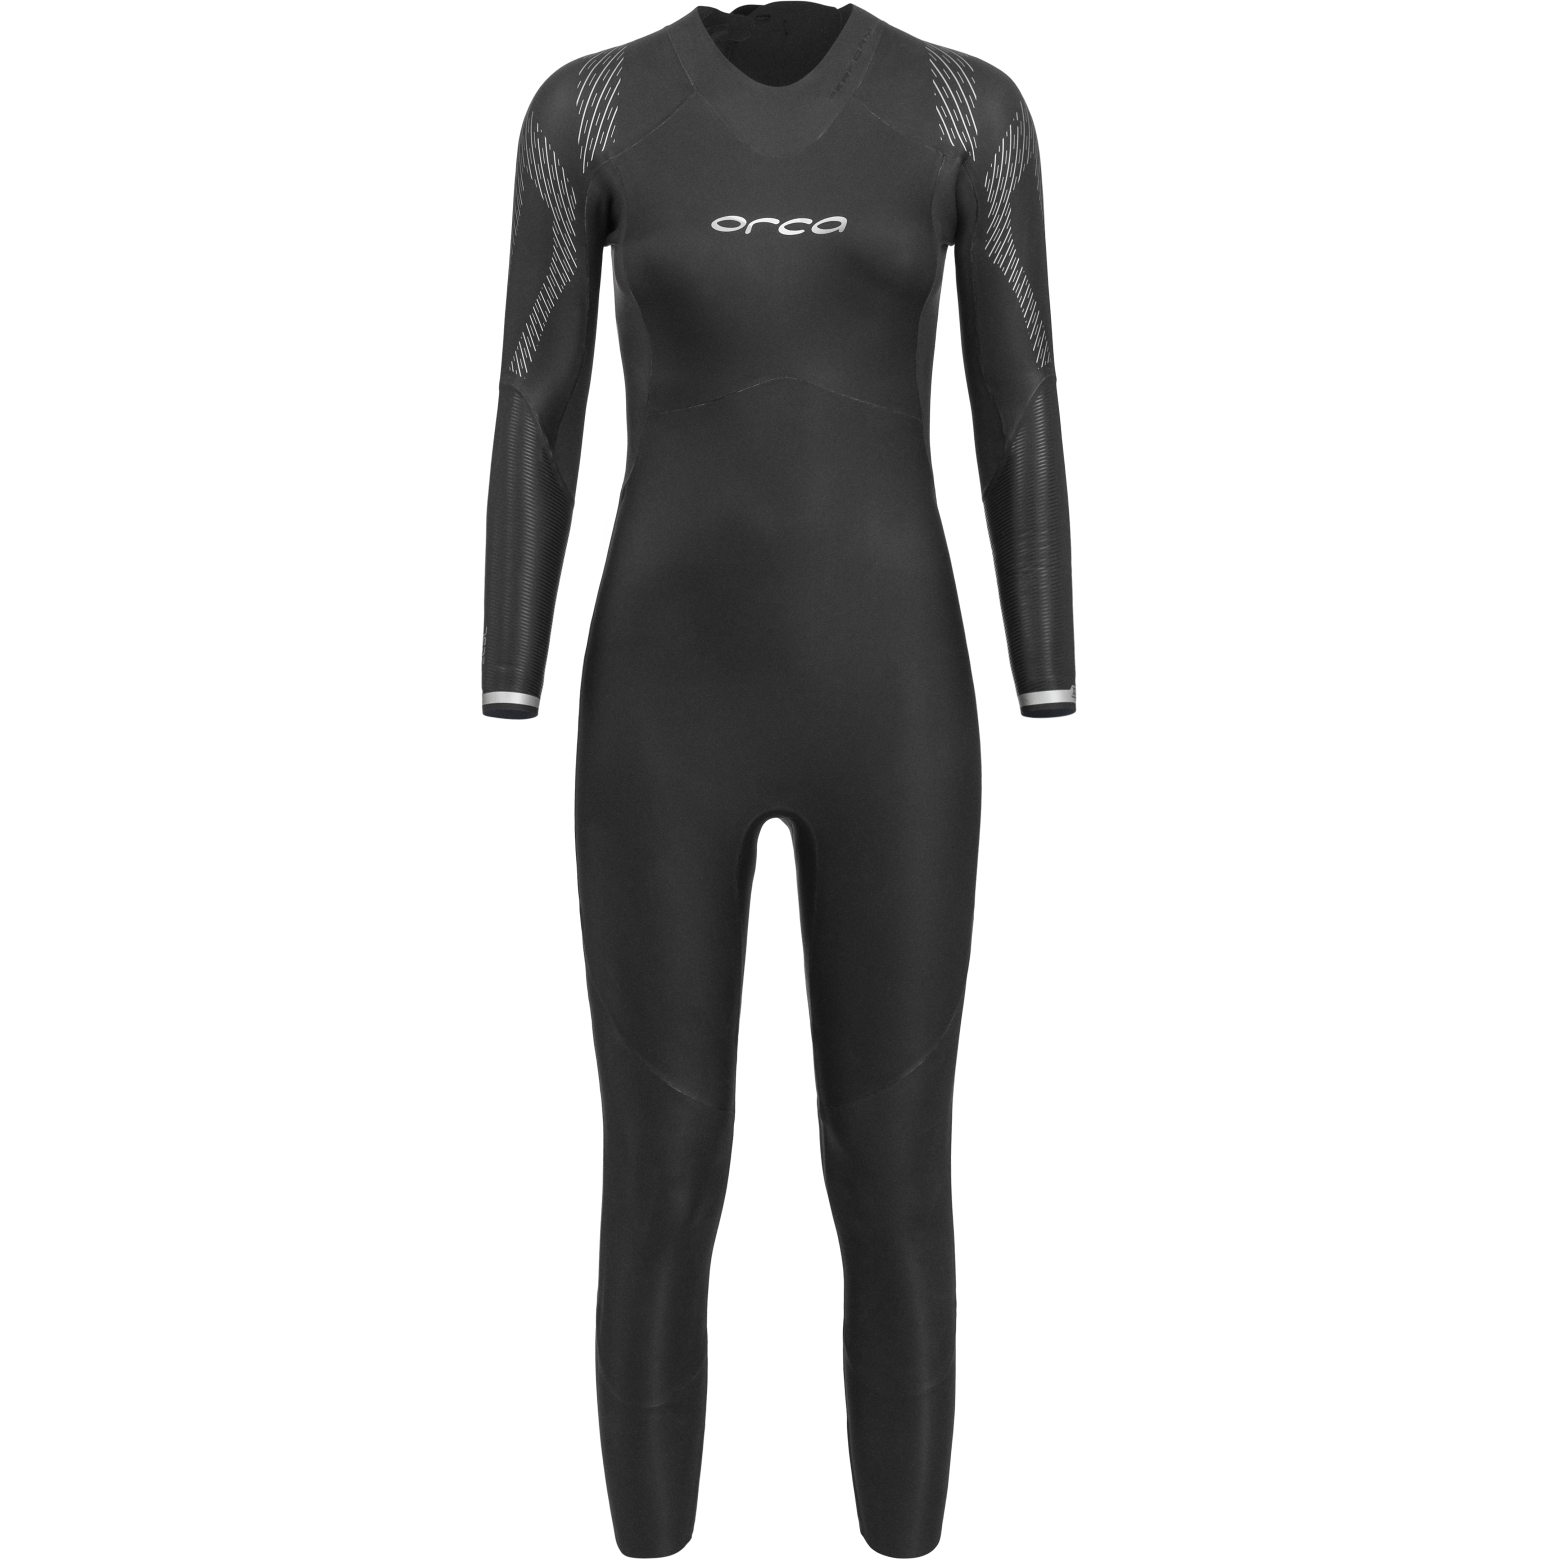 Produktbild von Orca Openwater Zeal Perform Neoprenanzug Damen - schwarz NN6F